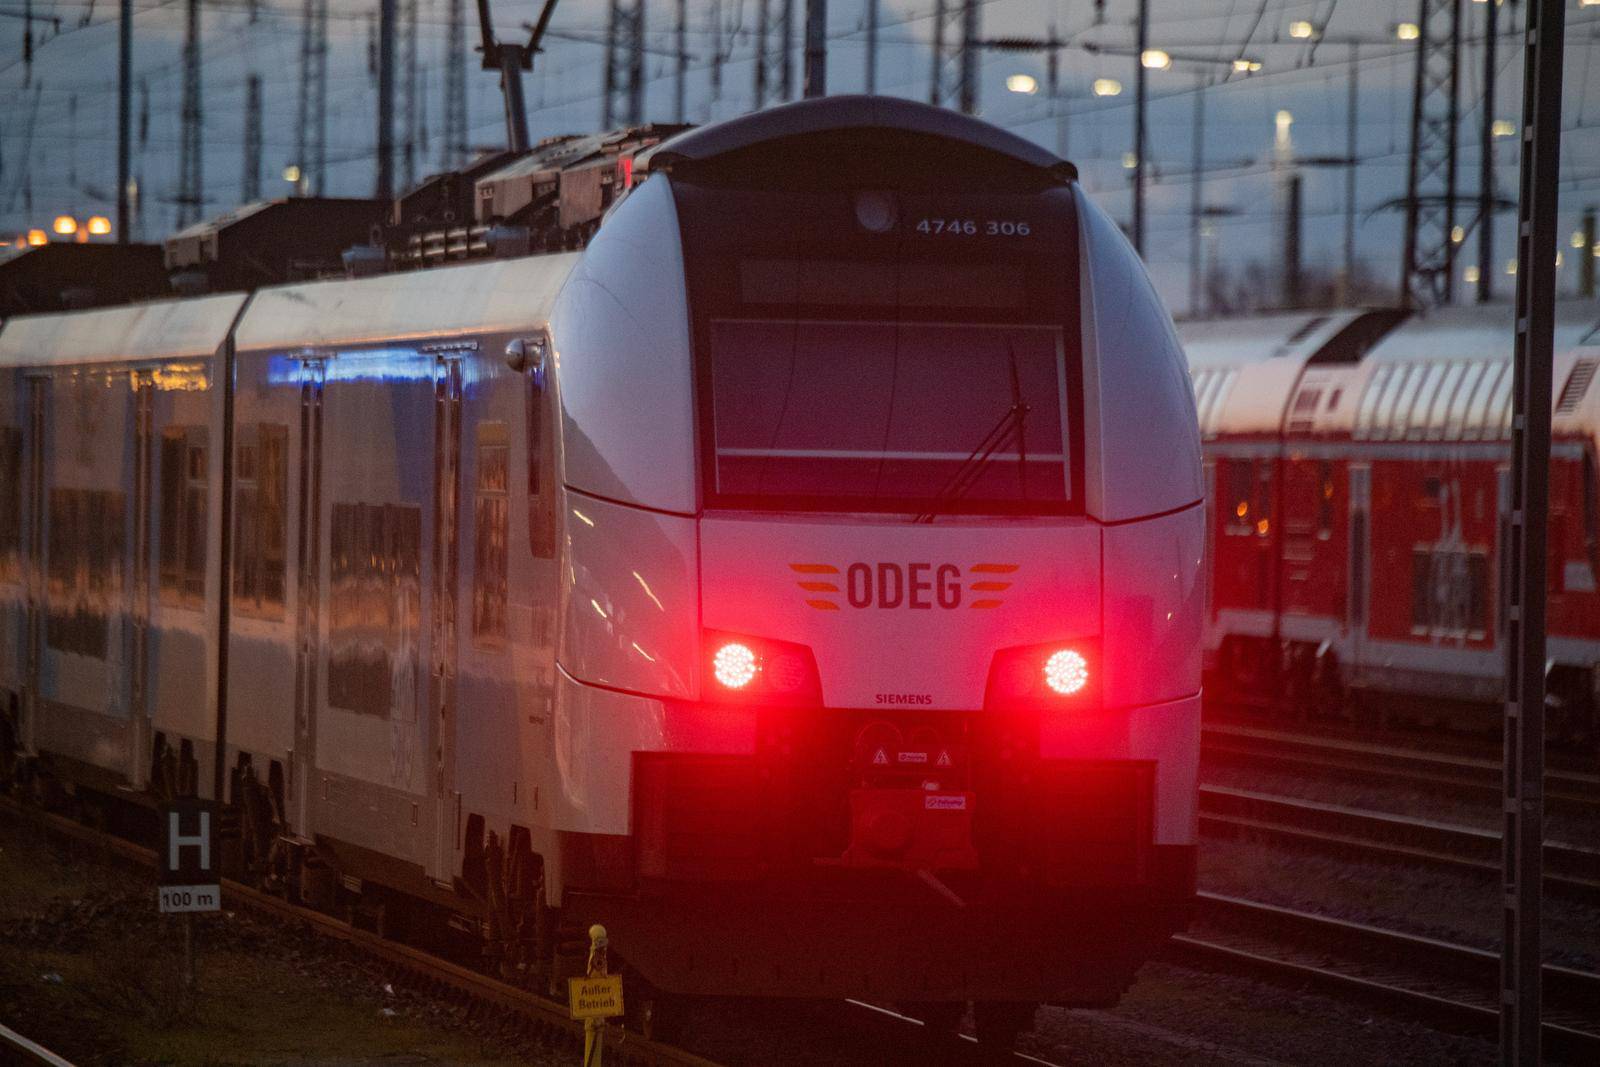 Warning Strikes in Germany - Stralsund Station